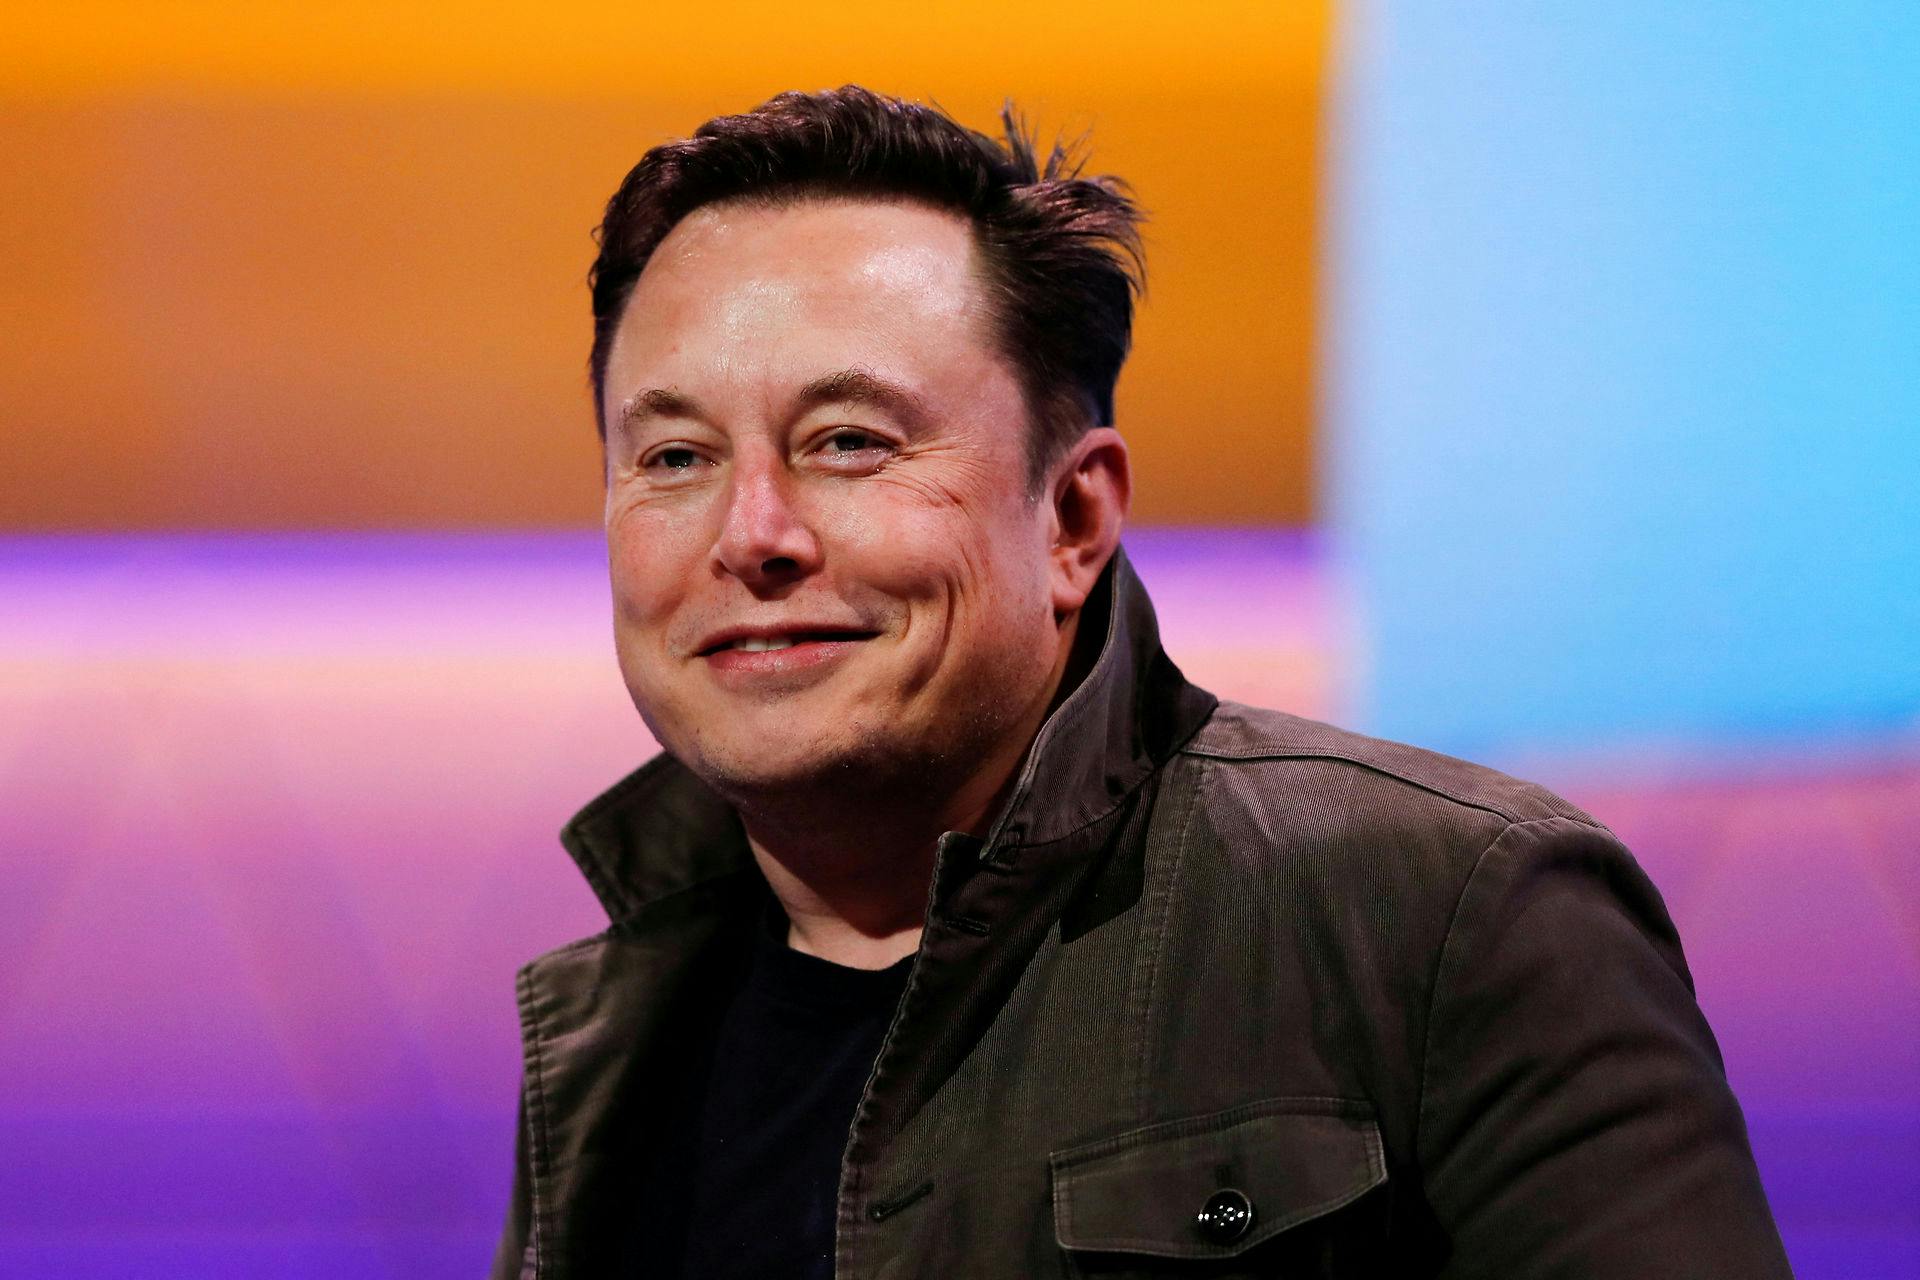 Elon Musks ekskone fortæller nu brutale detaljer om deres forhold i ny dokumentar.
